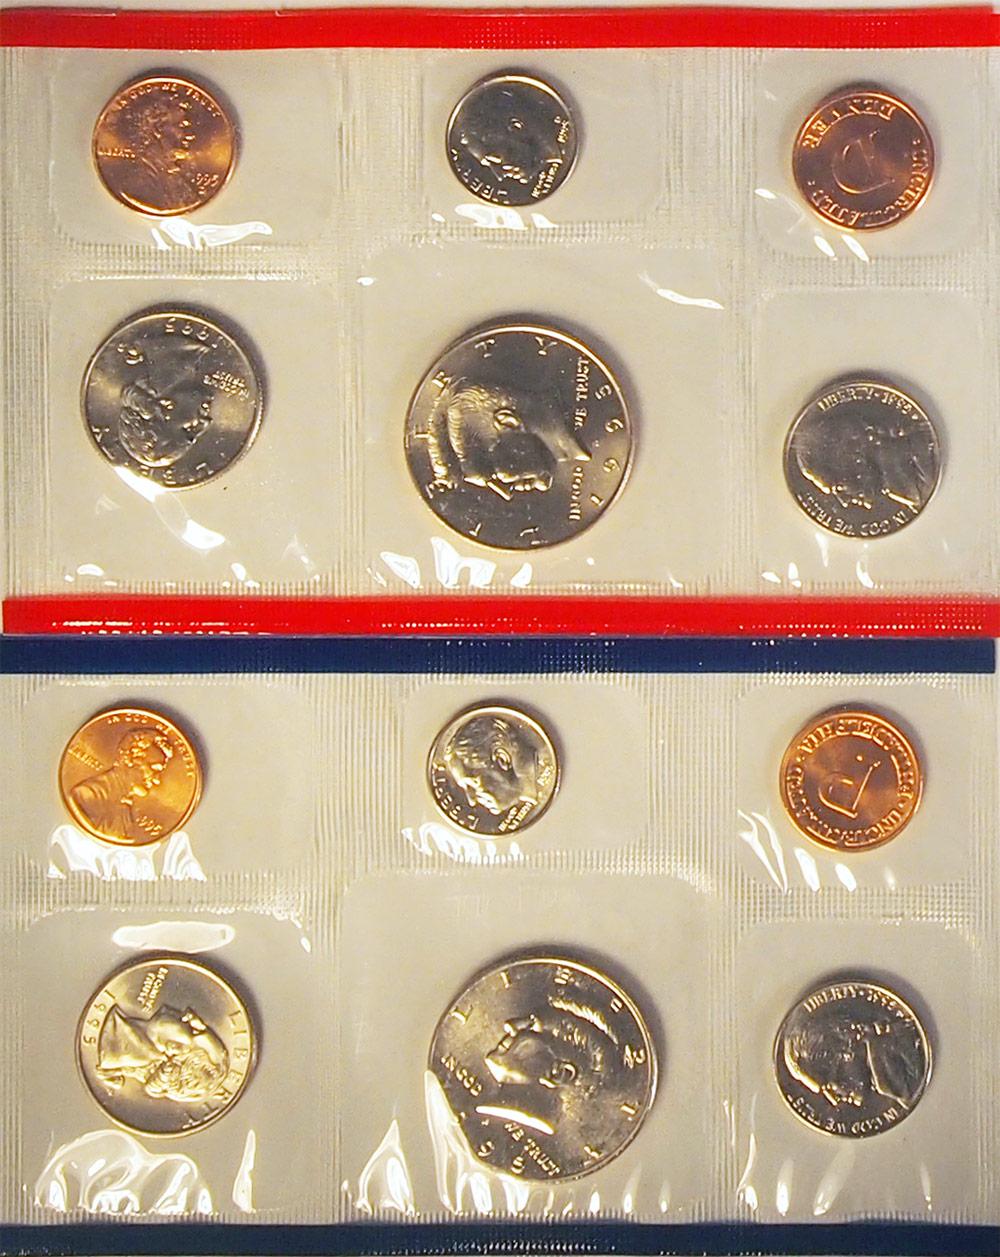 1995 Mint Set - All Original 10 Coin U.S. Mint Uncirculated Set